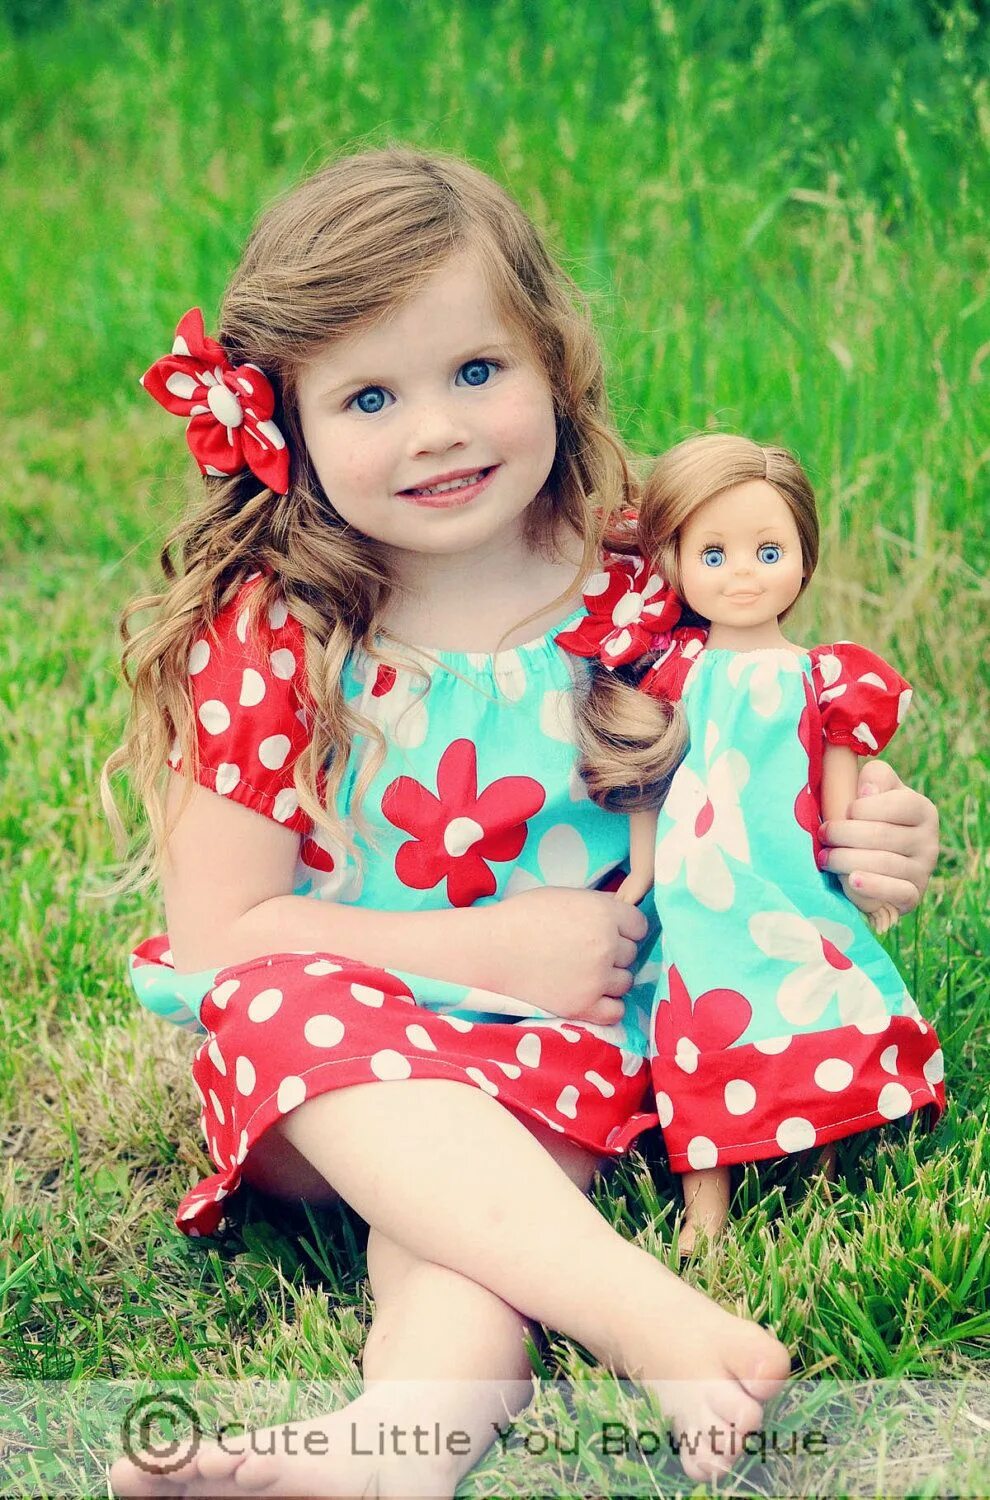 Кукла дочки матери. Куклы для девочек. Кукла дочка. Одинаковая для куклы и девочки. Дети играют в куклы.